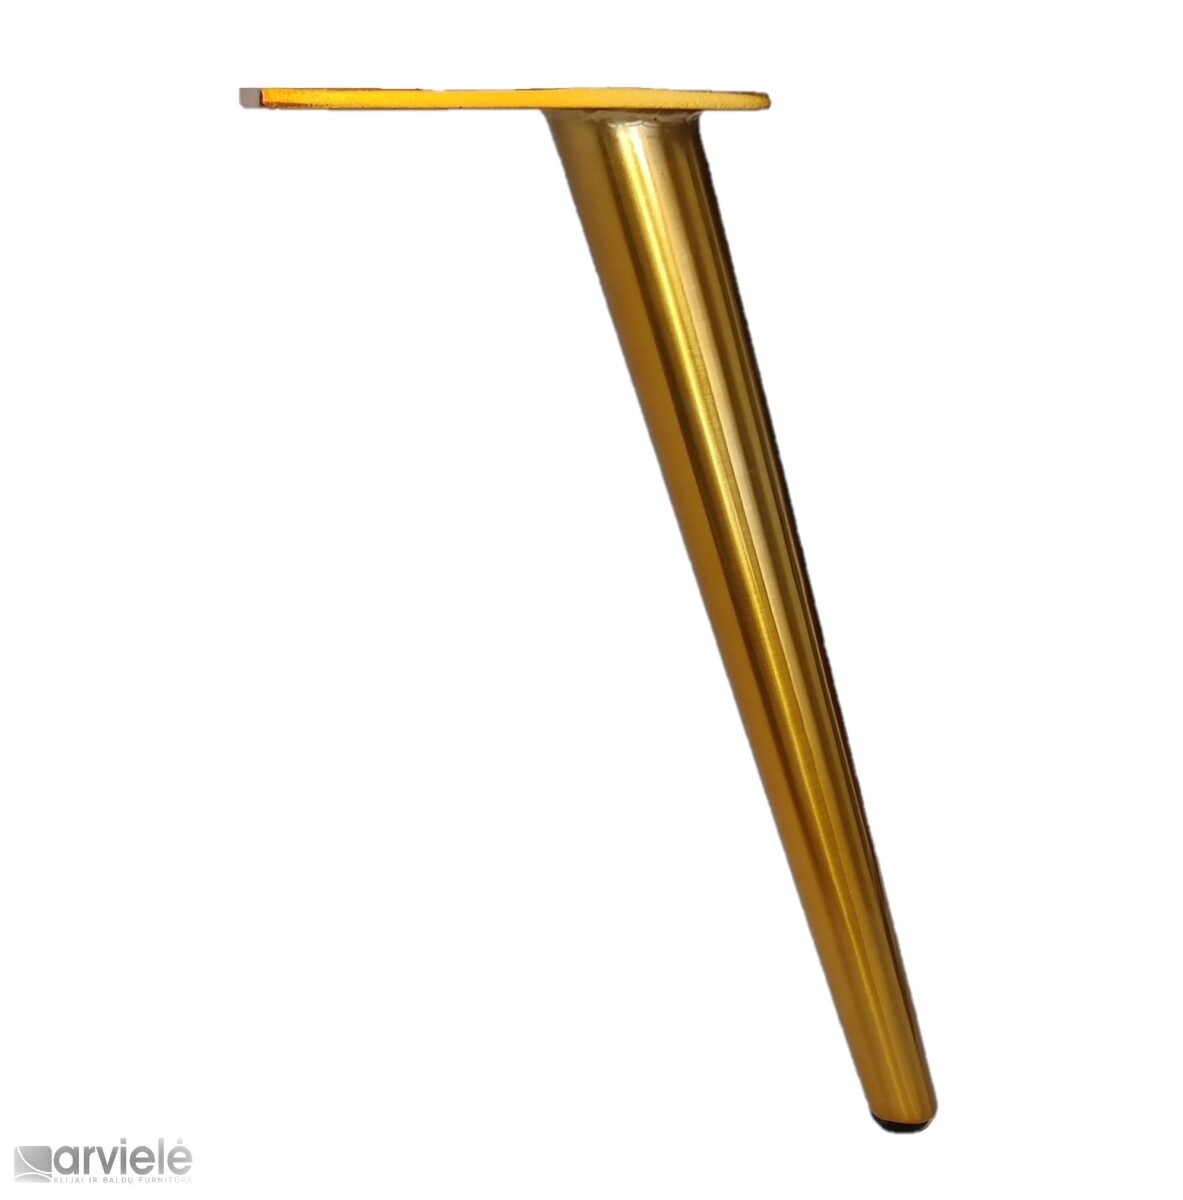 Auksinė baldinė kojelė | ARVIELĖ- baldų furnitūra ir klijai | ARVIELĖ .